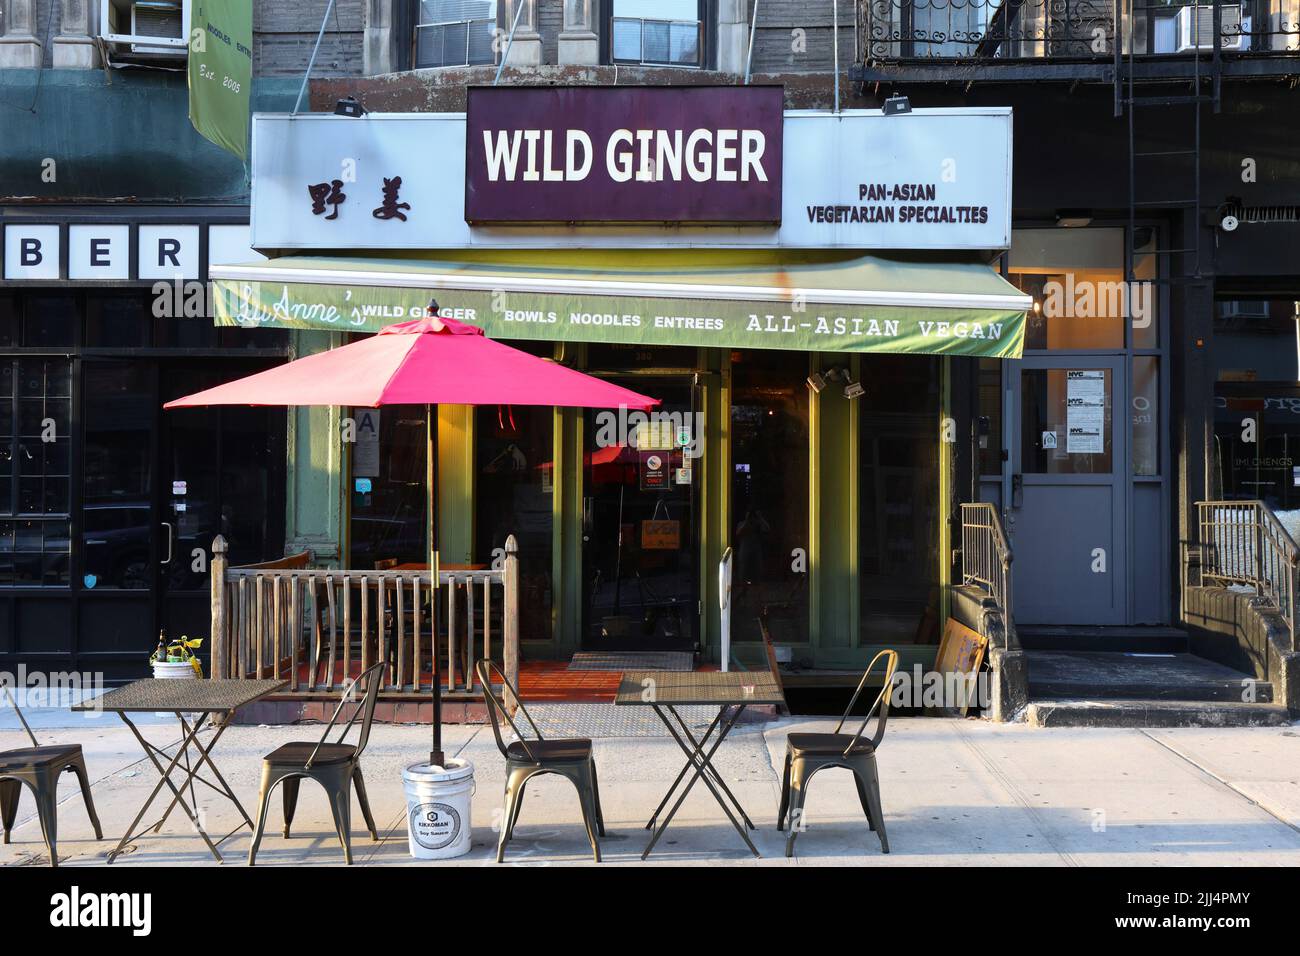 Luanne's Wild Ginger, 380 Broome St, New York, NY. Façade extérieure d'un restaurant fusion asiatique végétalien à Manhattan Chinatown/Little Italy. Banque D'Images